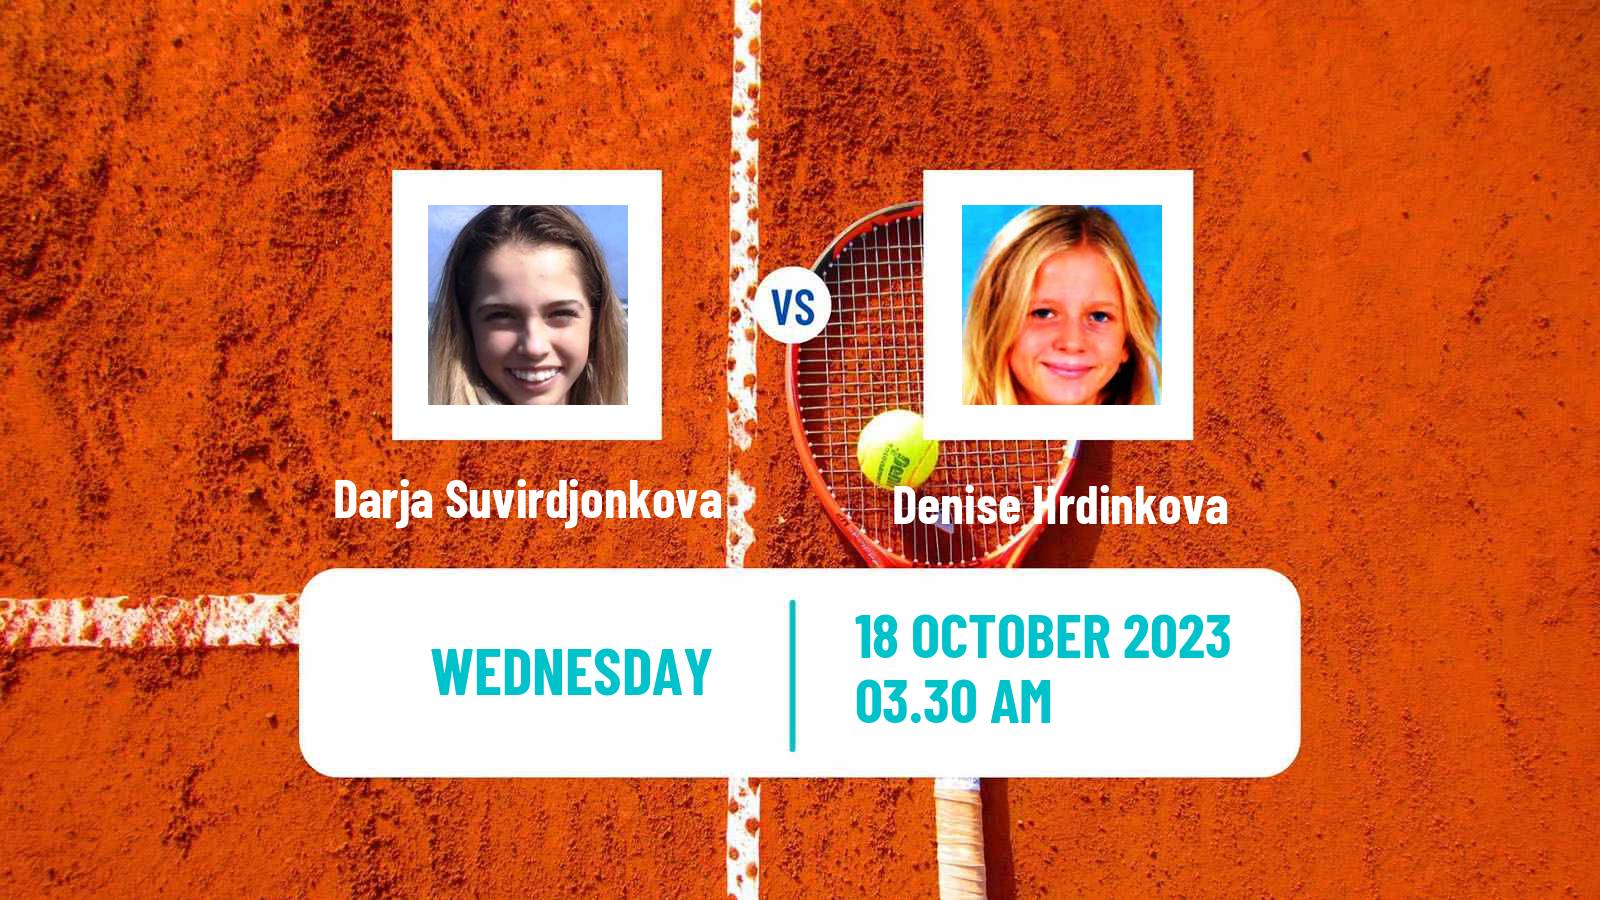 Tennis ITF W15 Sharm Elsheikh 22 Women Darja Suvirdjonkova - Denise Hrdinkova